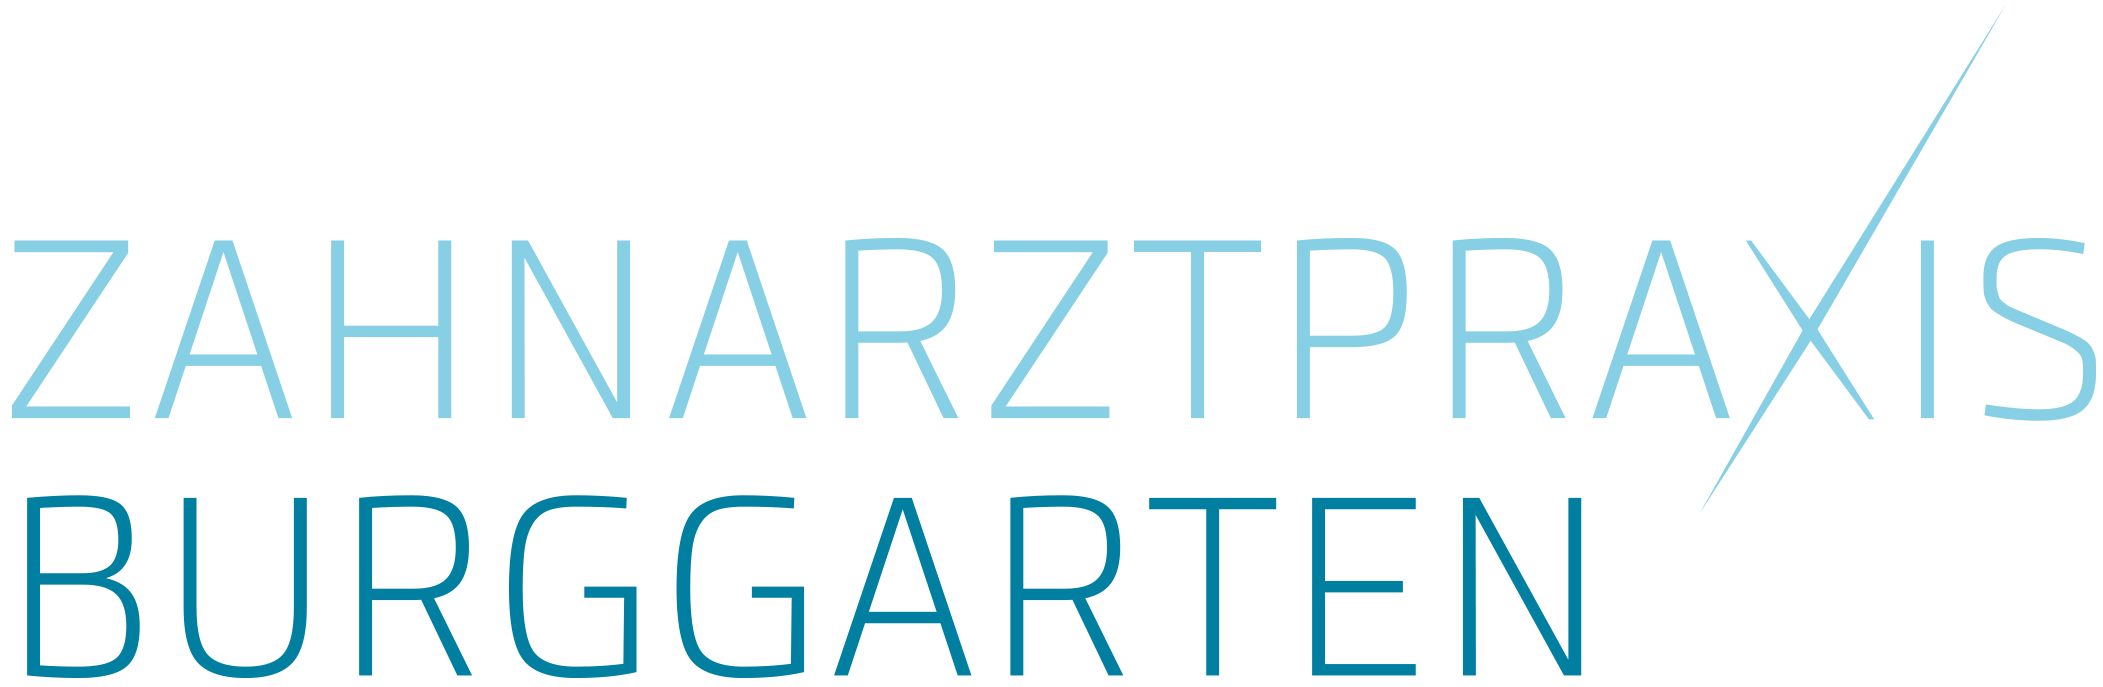 praixs_burggarten - Zahnarzt in Pratteln